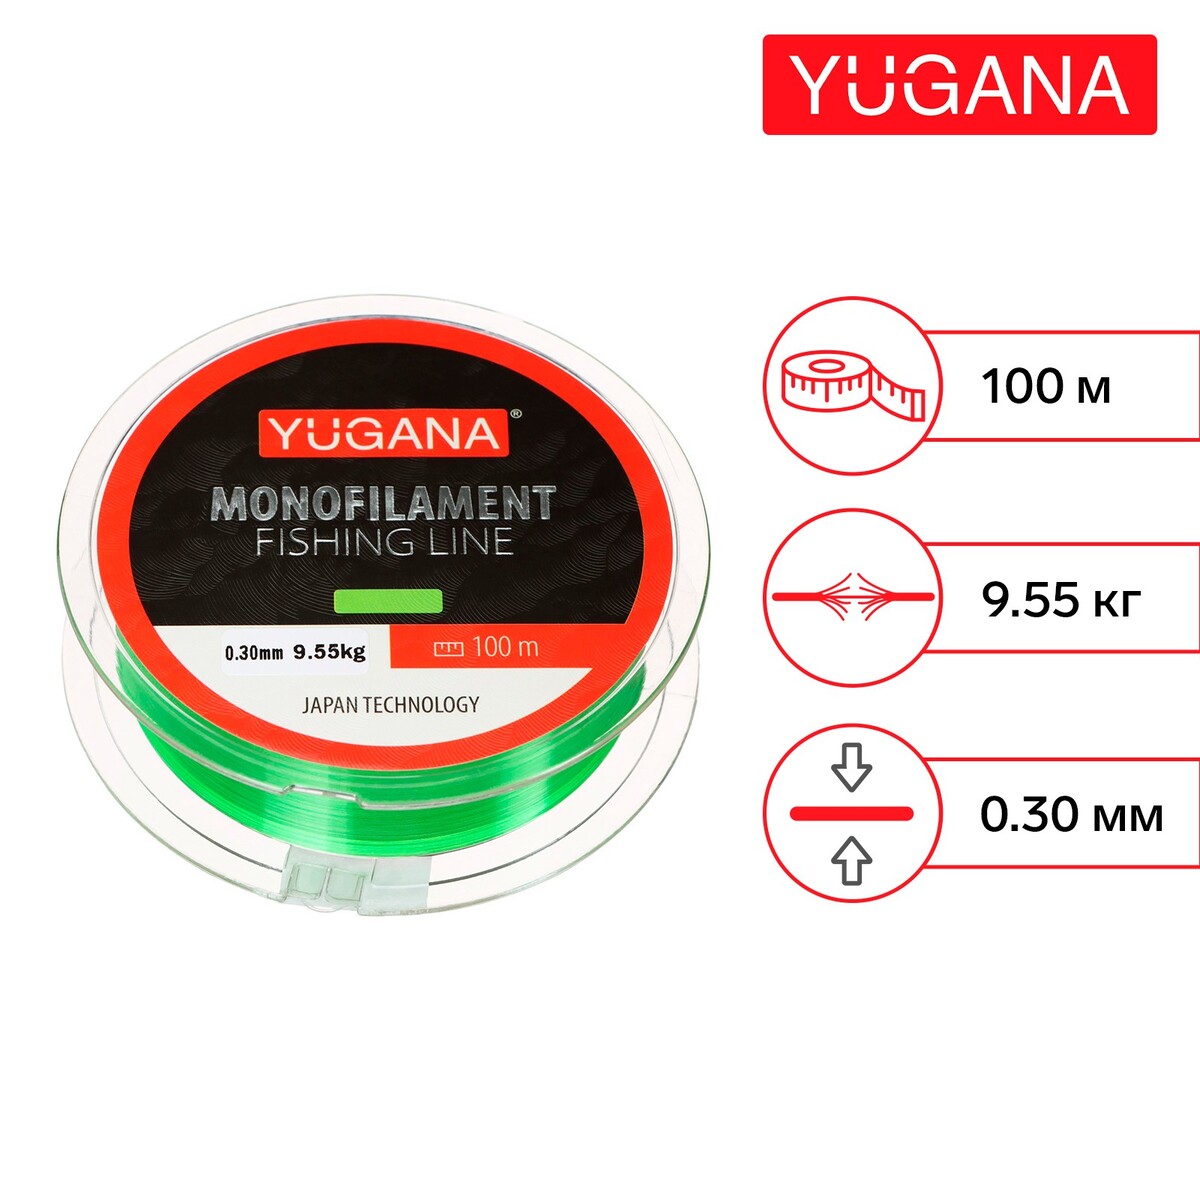 Леска монофильная yugana, диаметр 0.3 мм, тест 9.55 кг, 100 м, зеленая